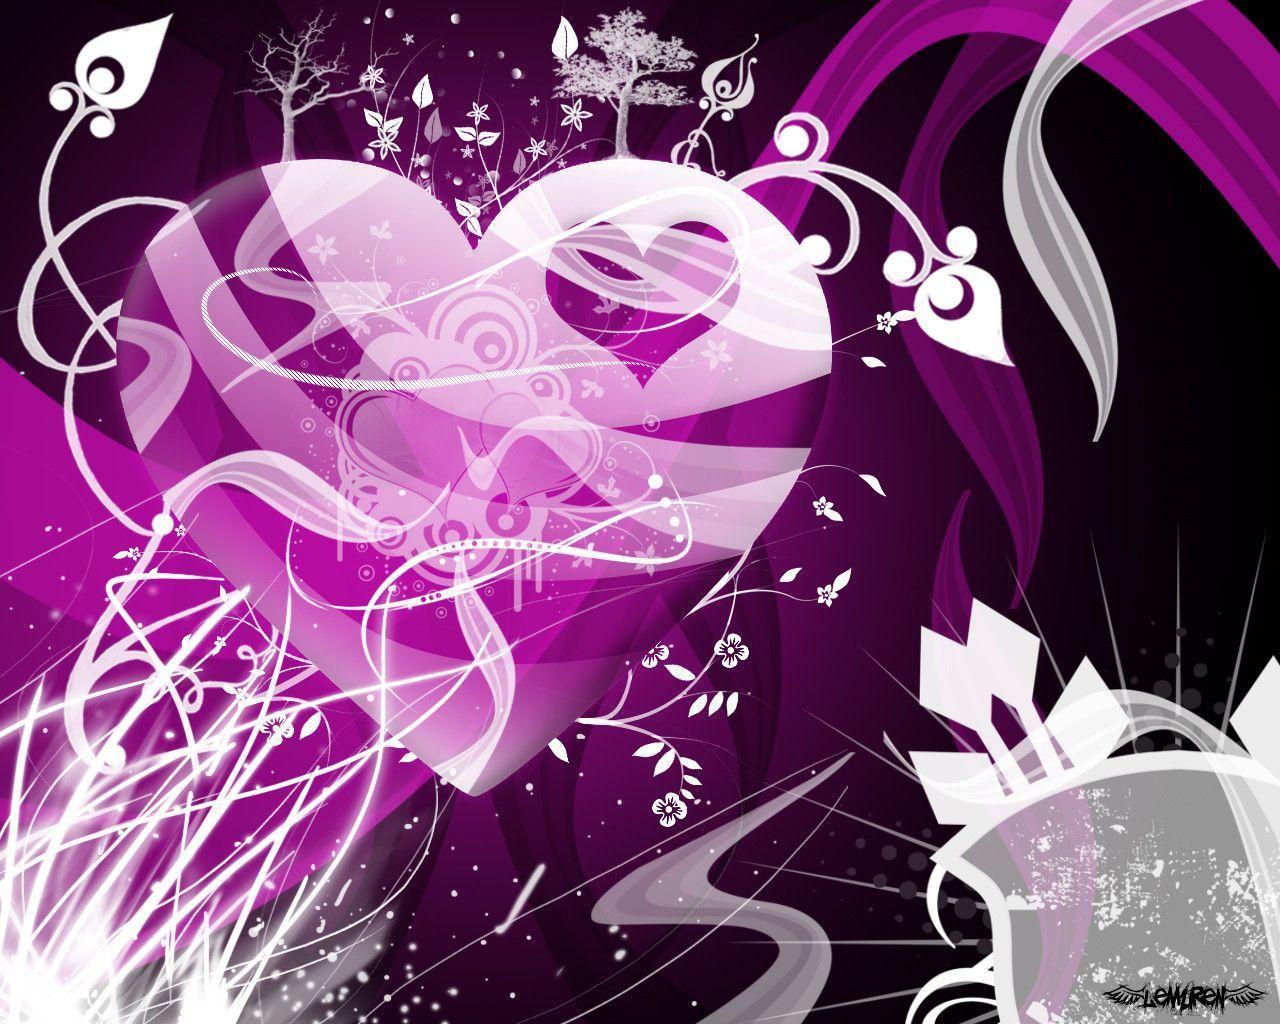 army purple heart wallpaper